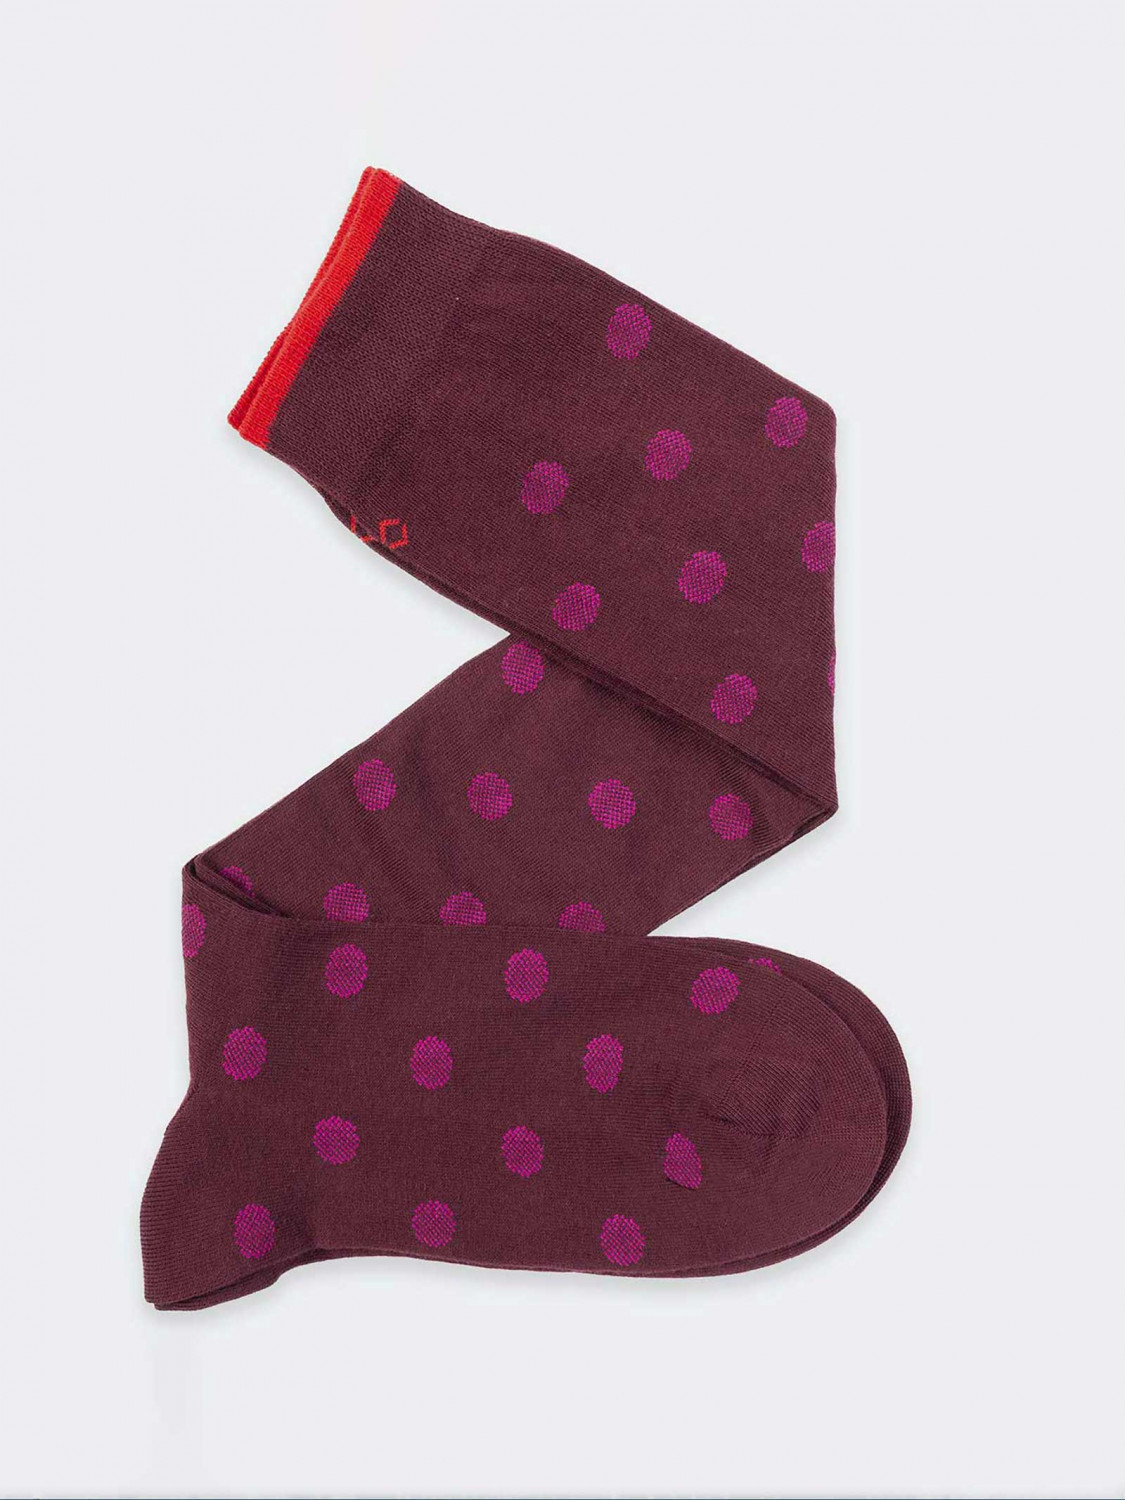 Dotted pois pattern Men's Knee High Socks